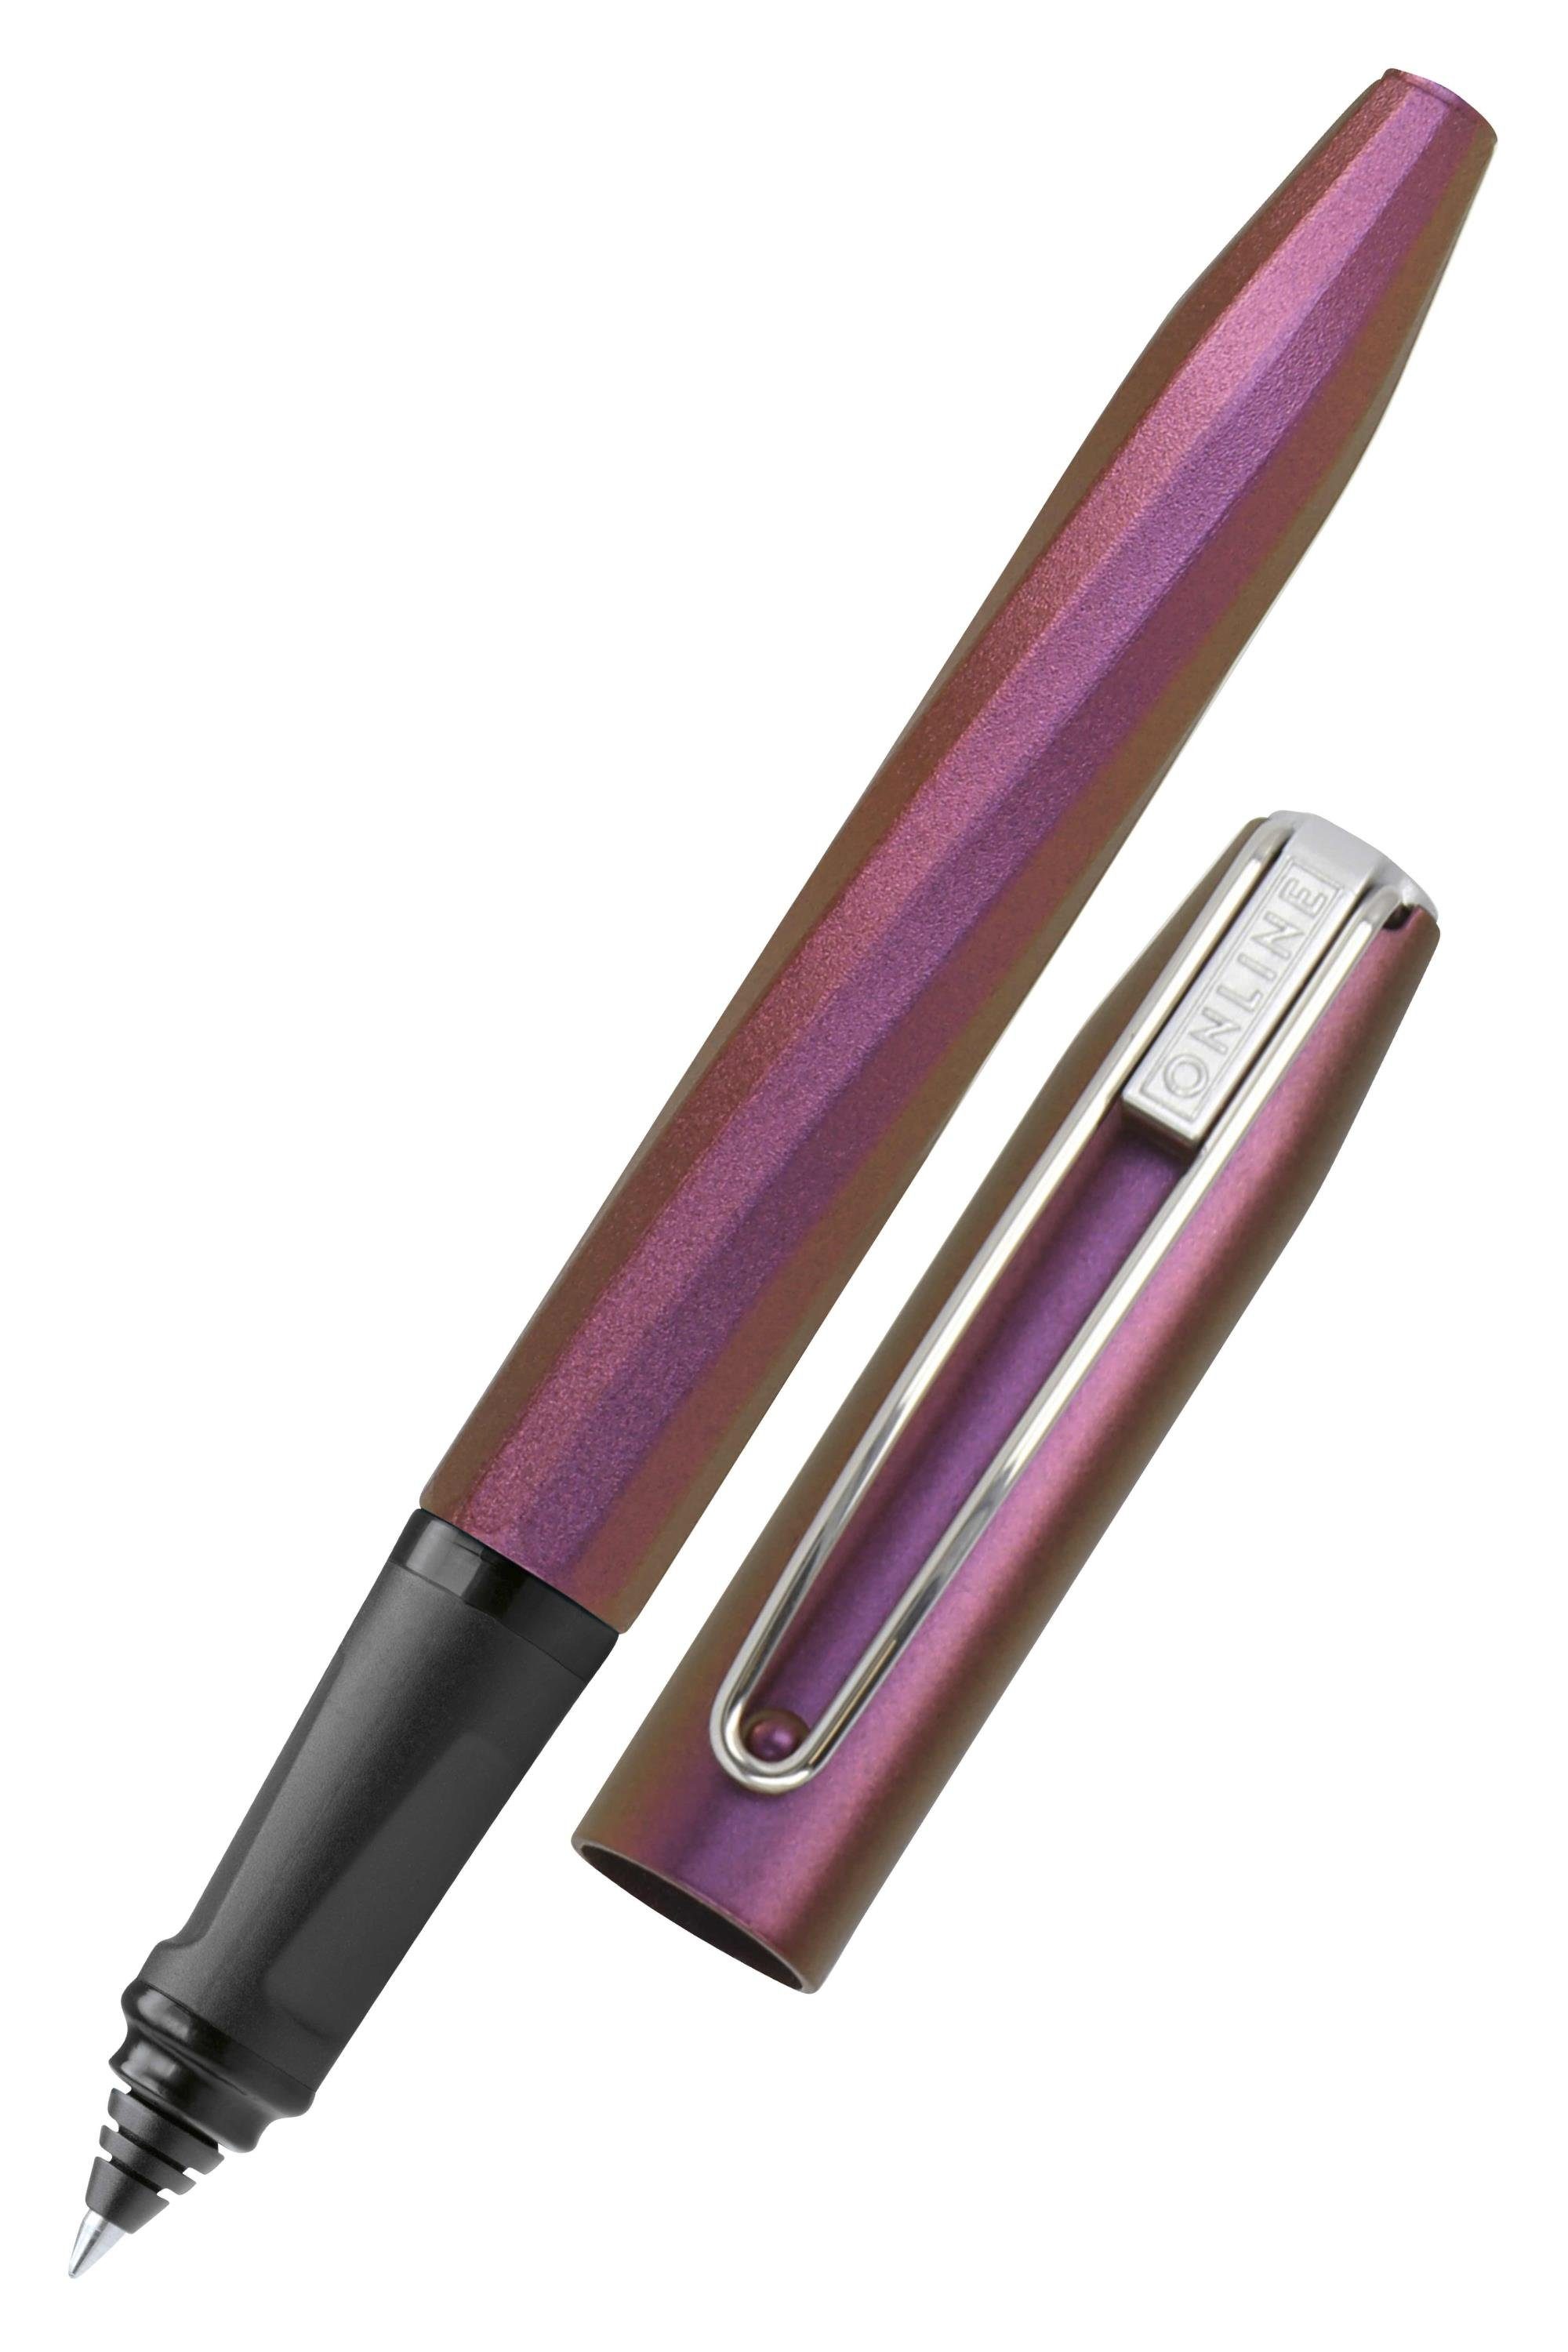 Online Pen Tintenroller Slope, ergonomisch, ideal für die Schule, inkl. Tintenpatrone Pink